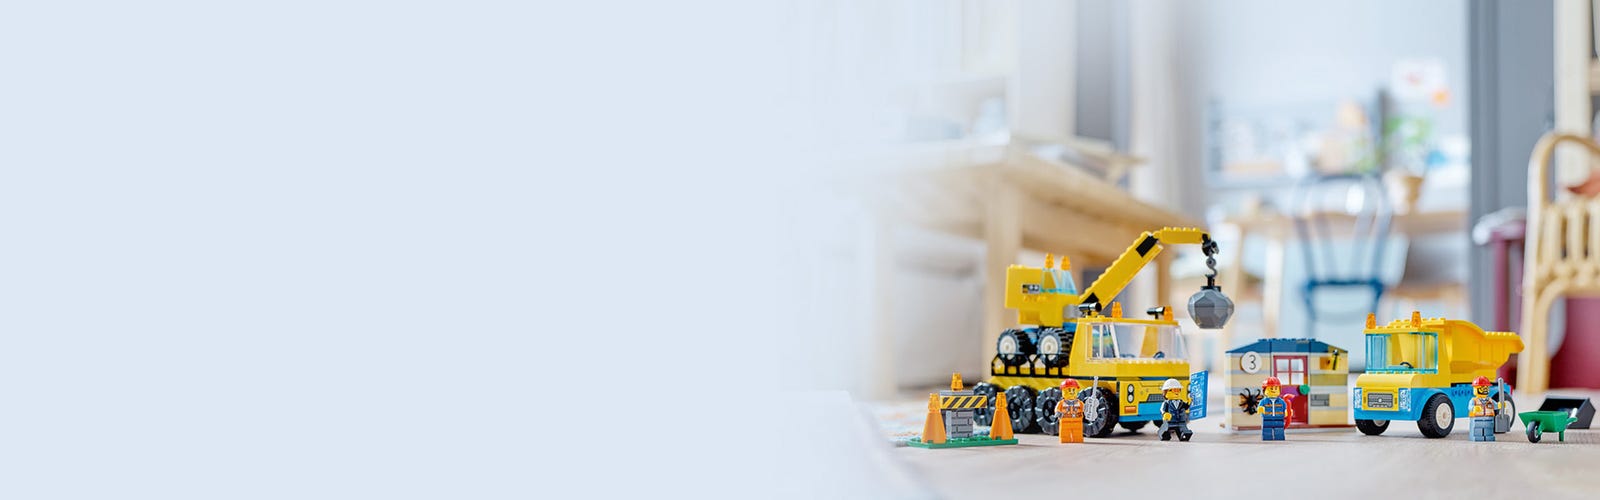 LEGO - Le camion de construction et la grue à boule de destruction -  Assemblage et construction - JEUX, JOUETS -  - Livres +  cadeaux + jeux